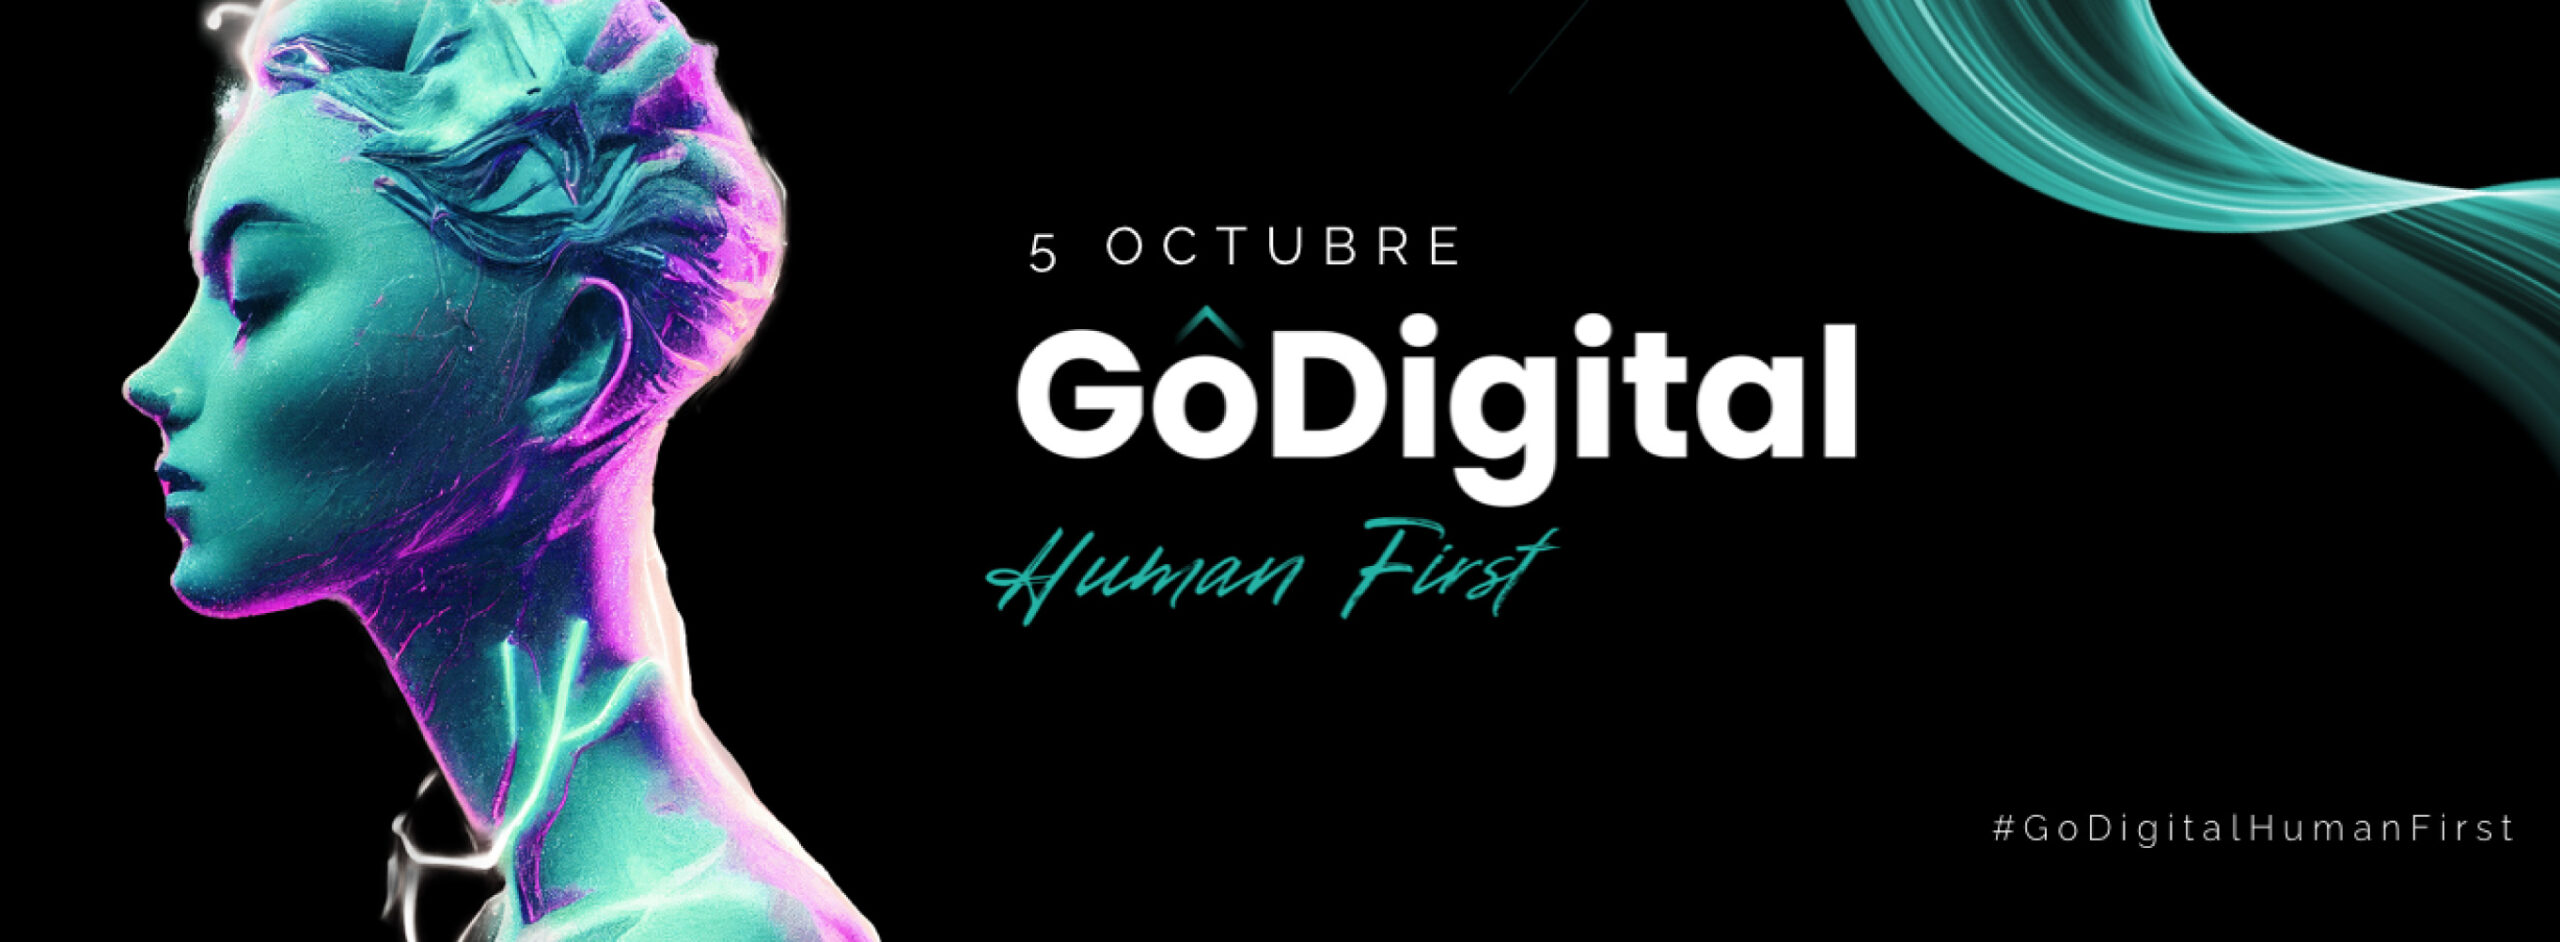 GoDigital Human First: El evento de Cámara Valencia que pone a las personas en el centro de la Transformación Tecnológica